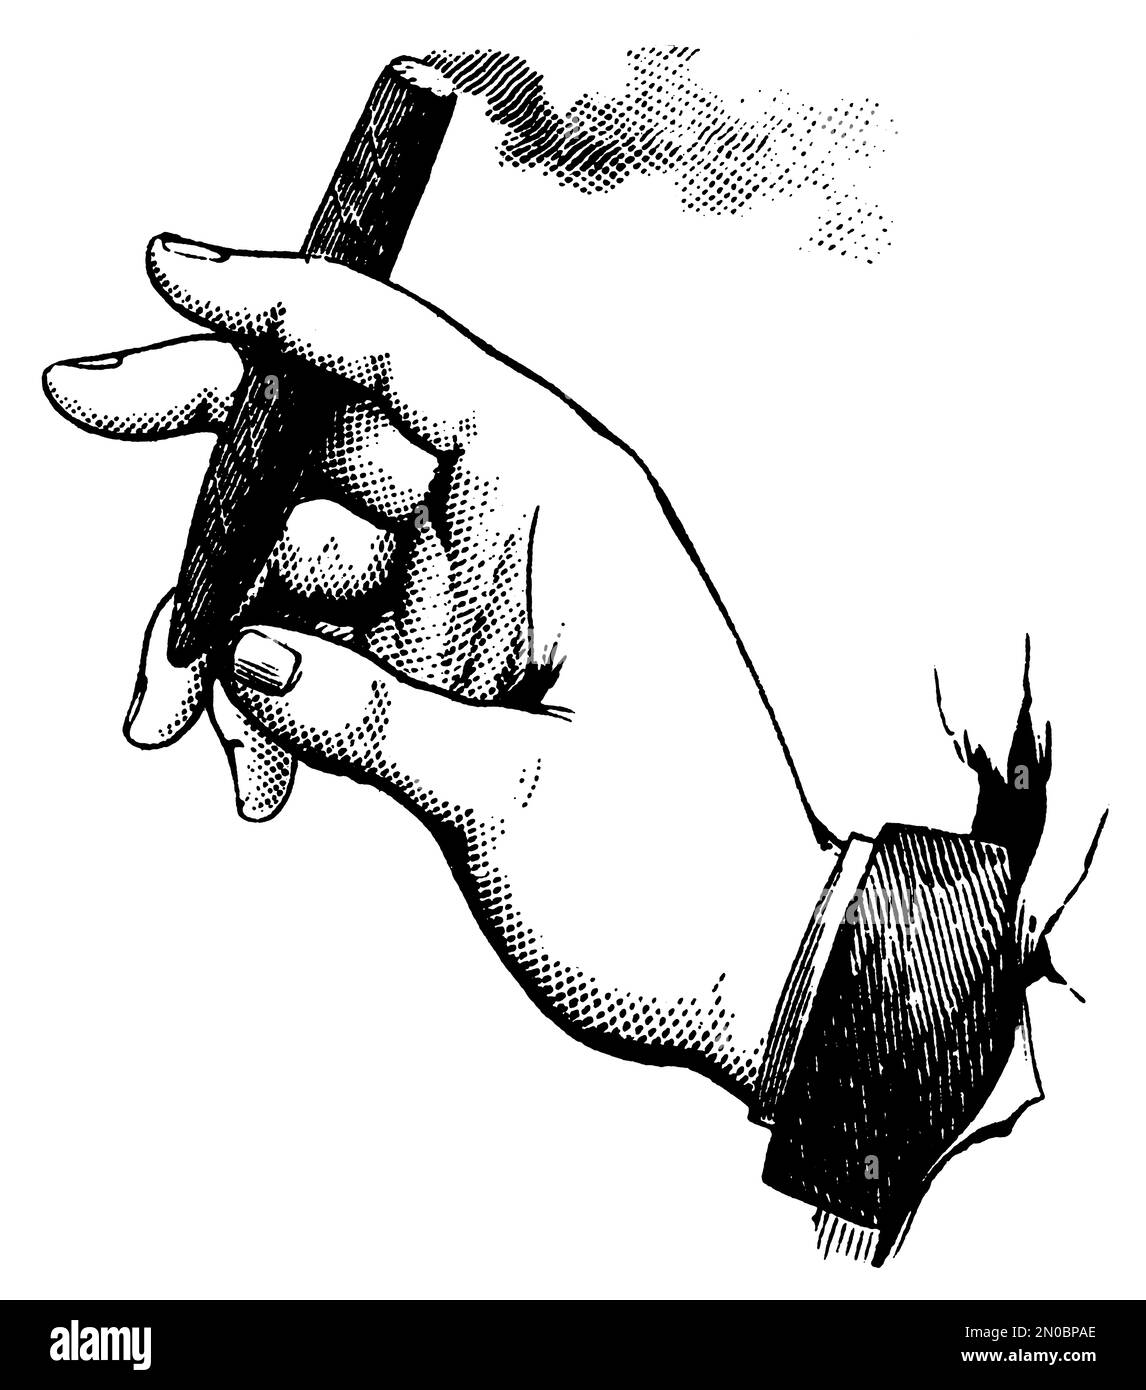 Antike Gravur aus dem 19. Jahrhundert in der Hand des Menschen mit einer Zigarre (isoliert auf weiß). Veröffentlicht in Systematic Bilder-Atlas zum Conversations-Lexikon, Stockfoto